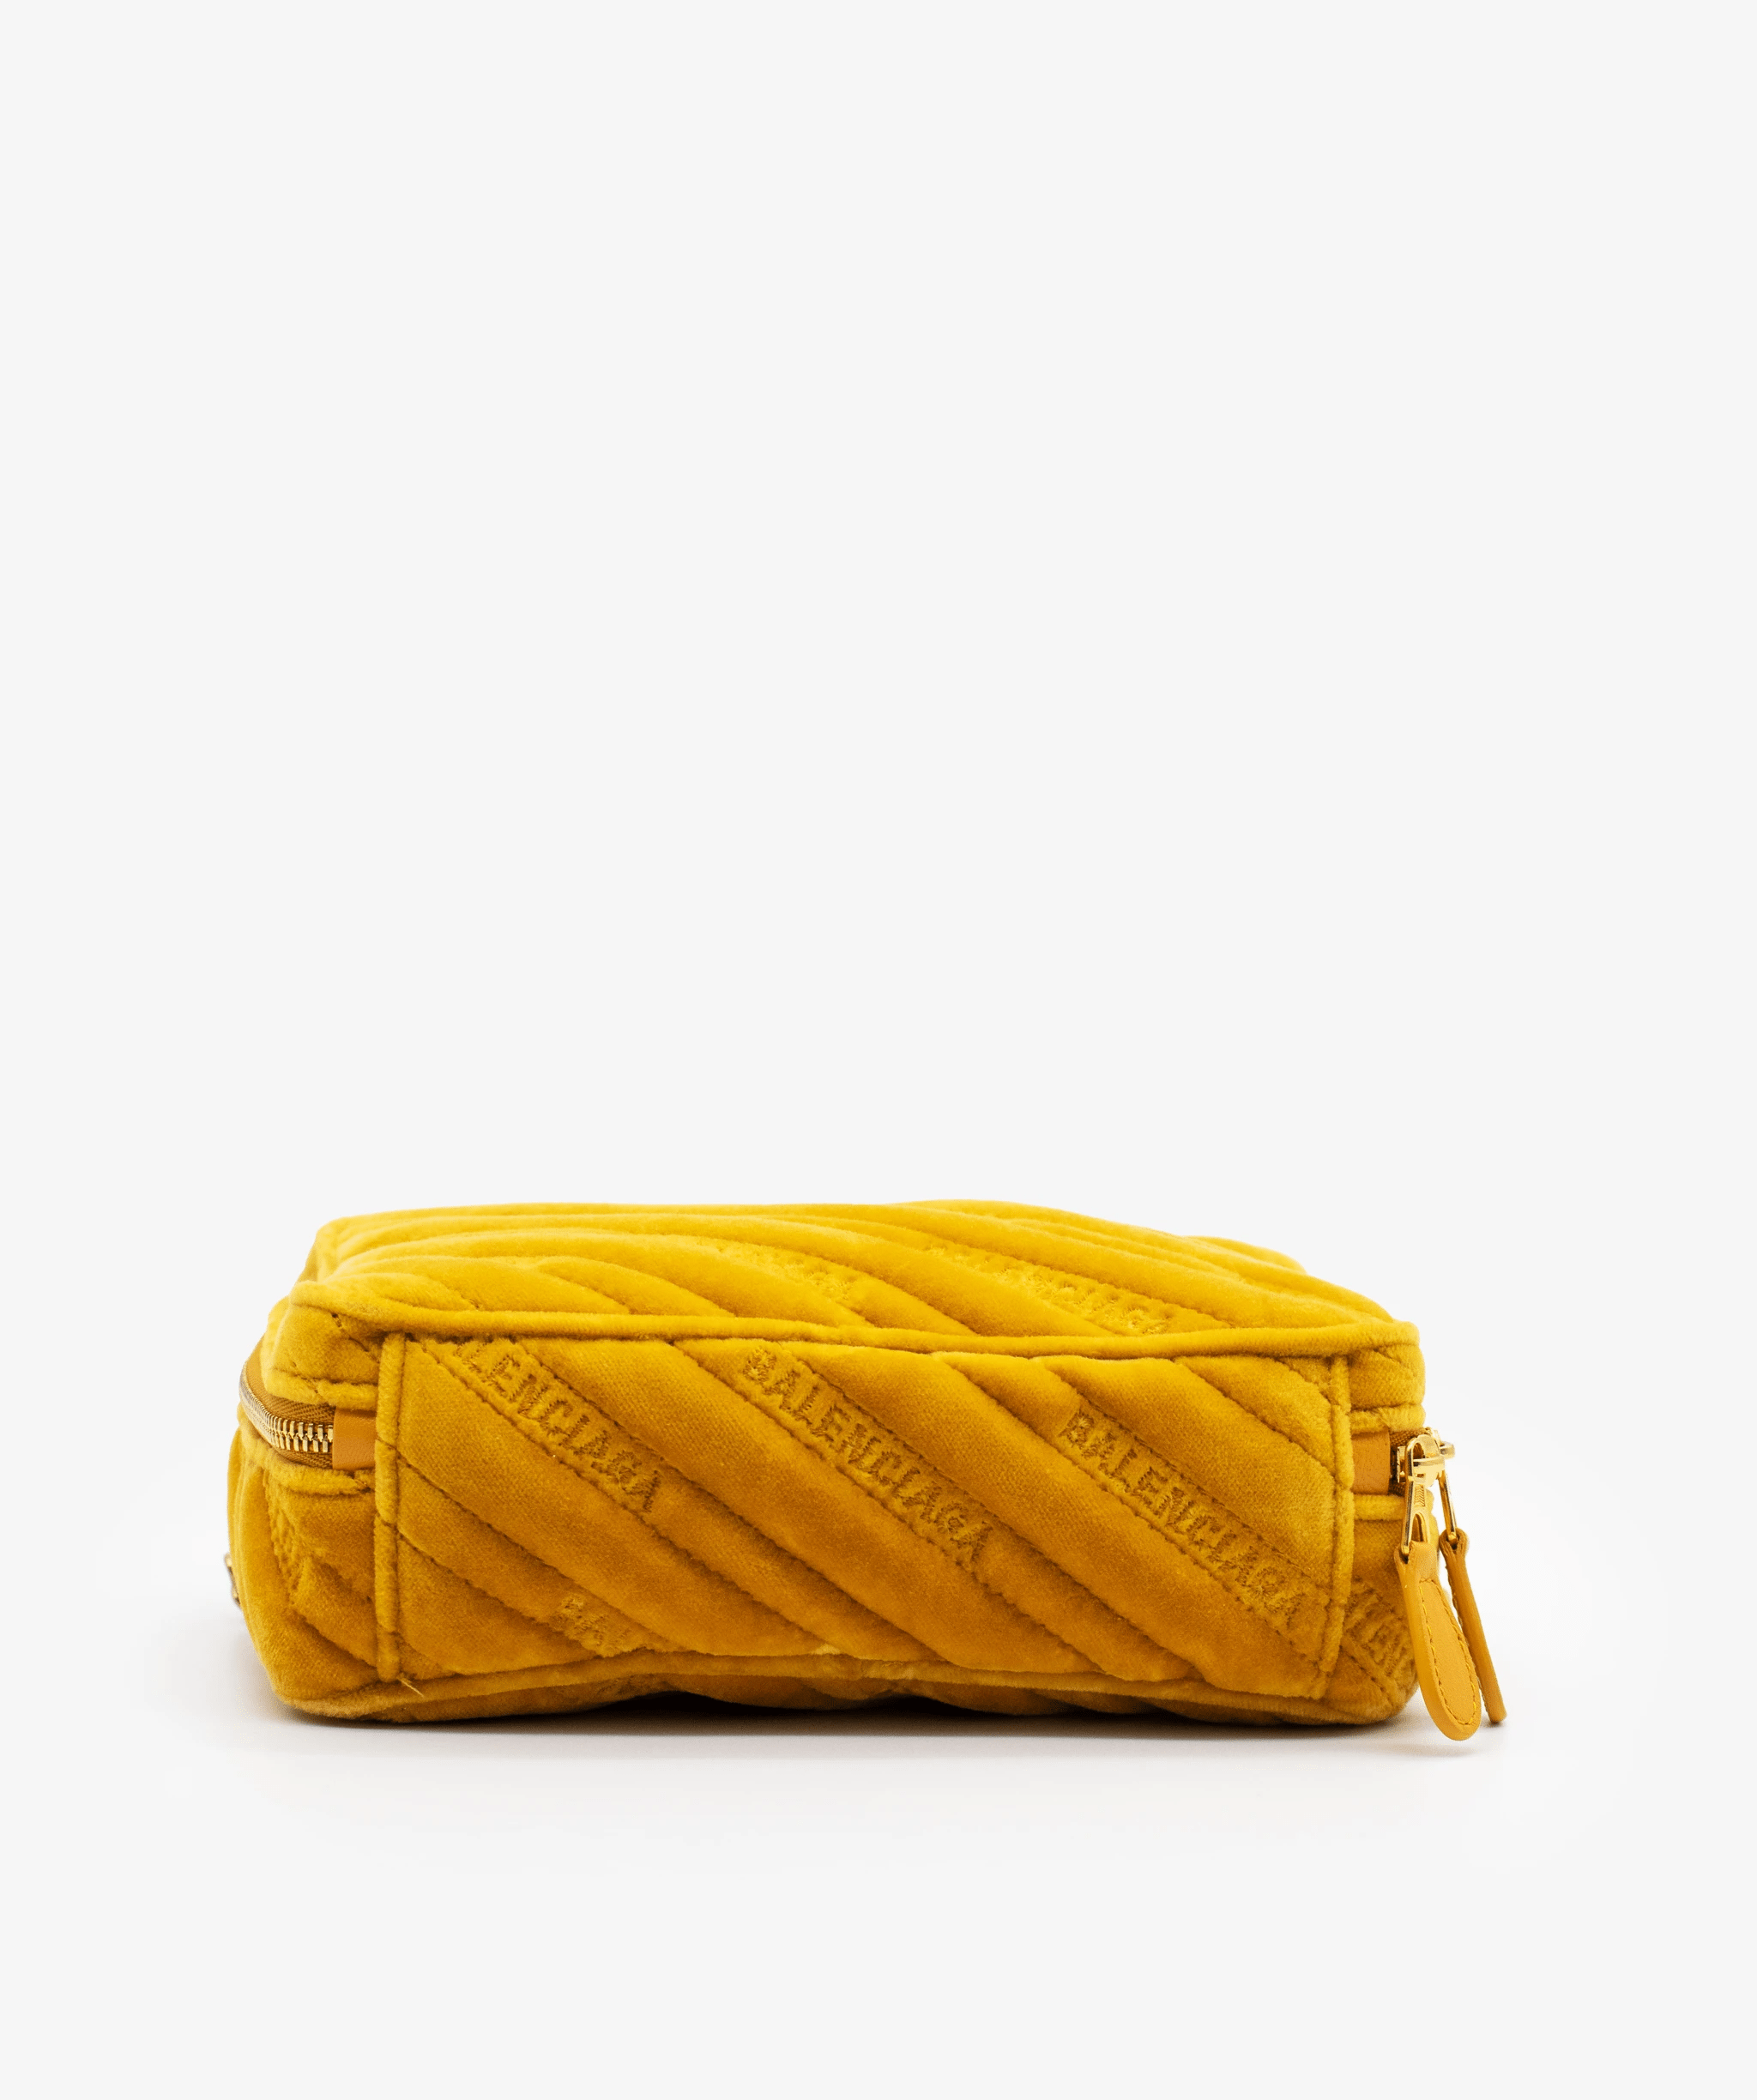 Balenciaga Balenciaga Yellow Camera Bag